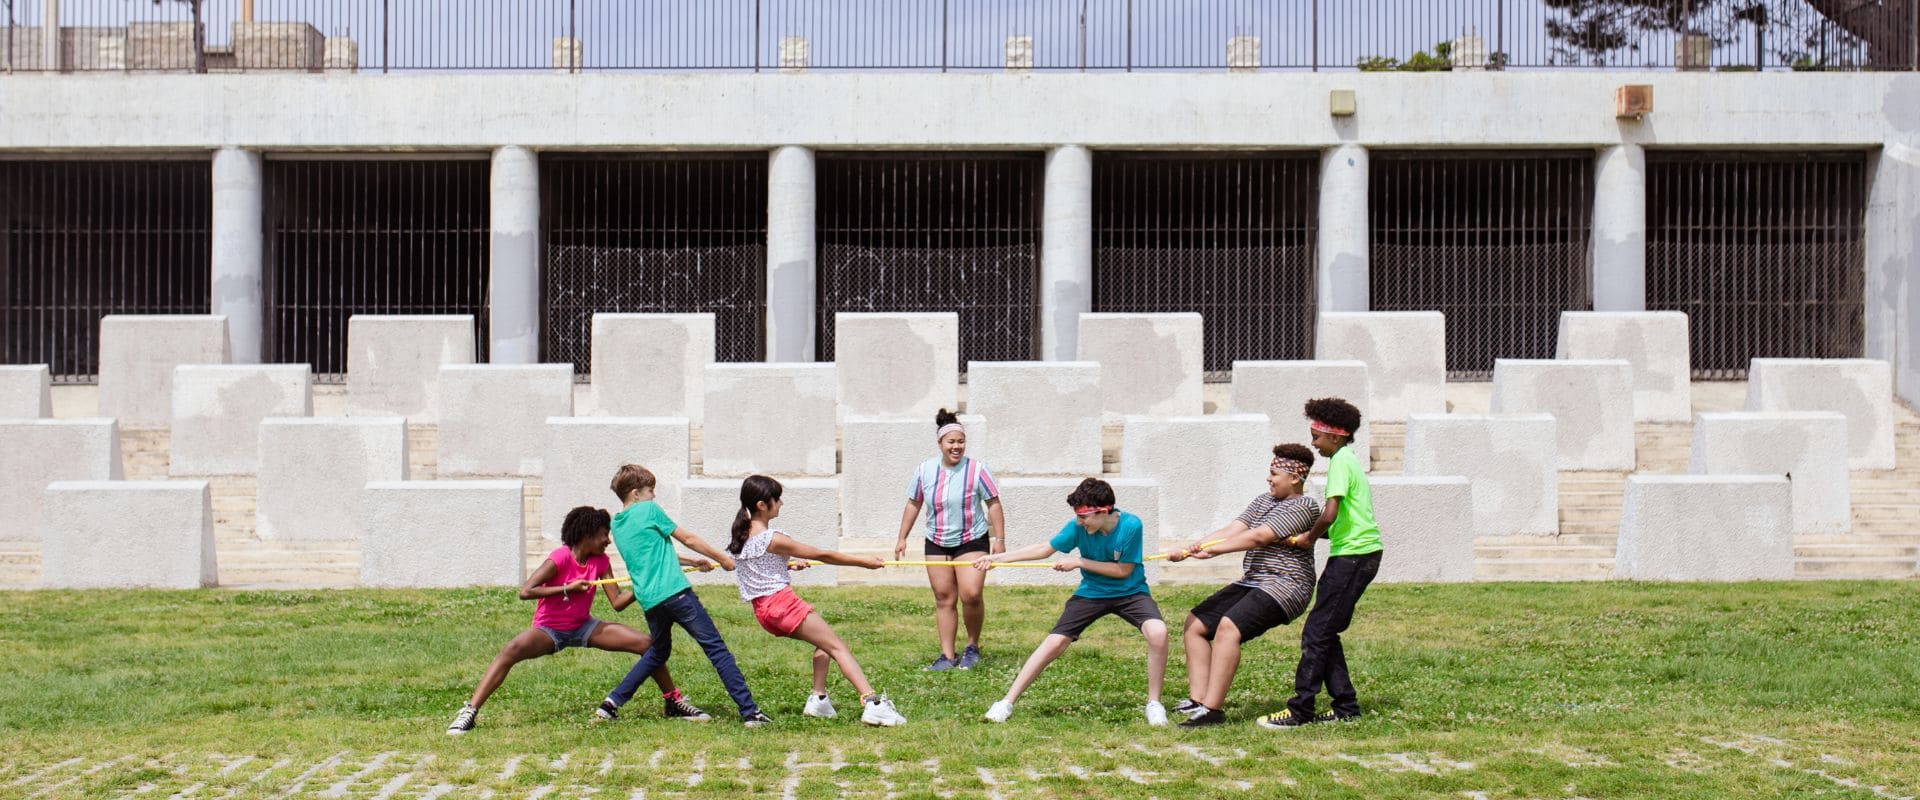 Niños jugando en un campamento de ingles urbano en madrid